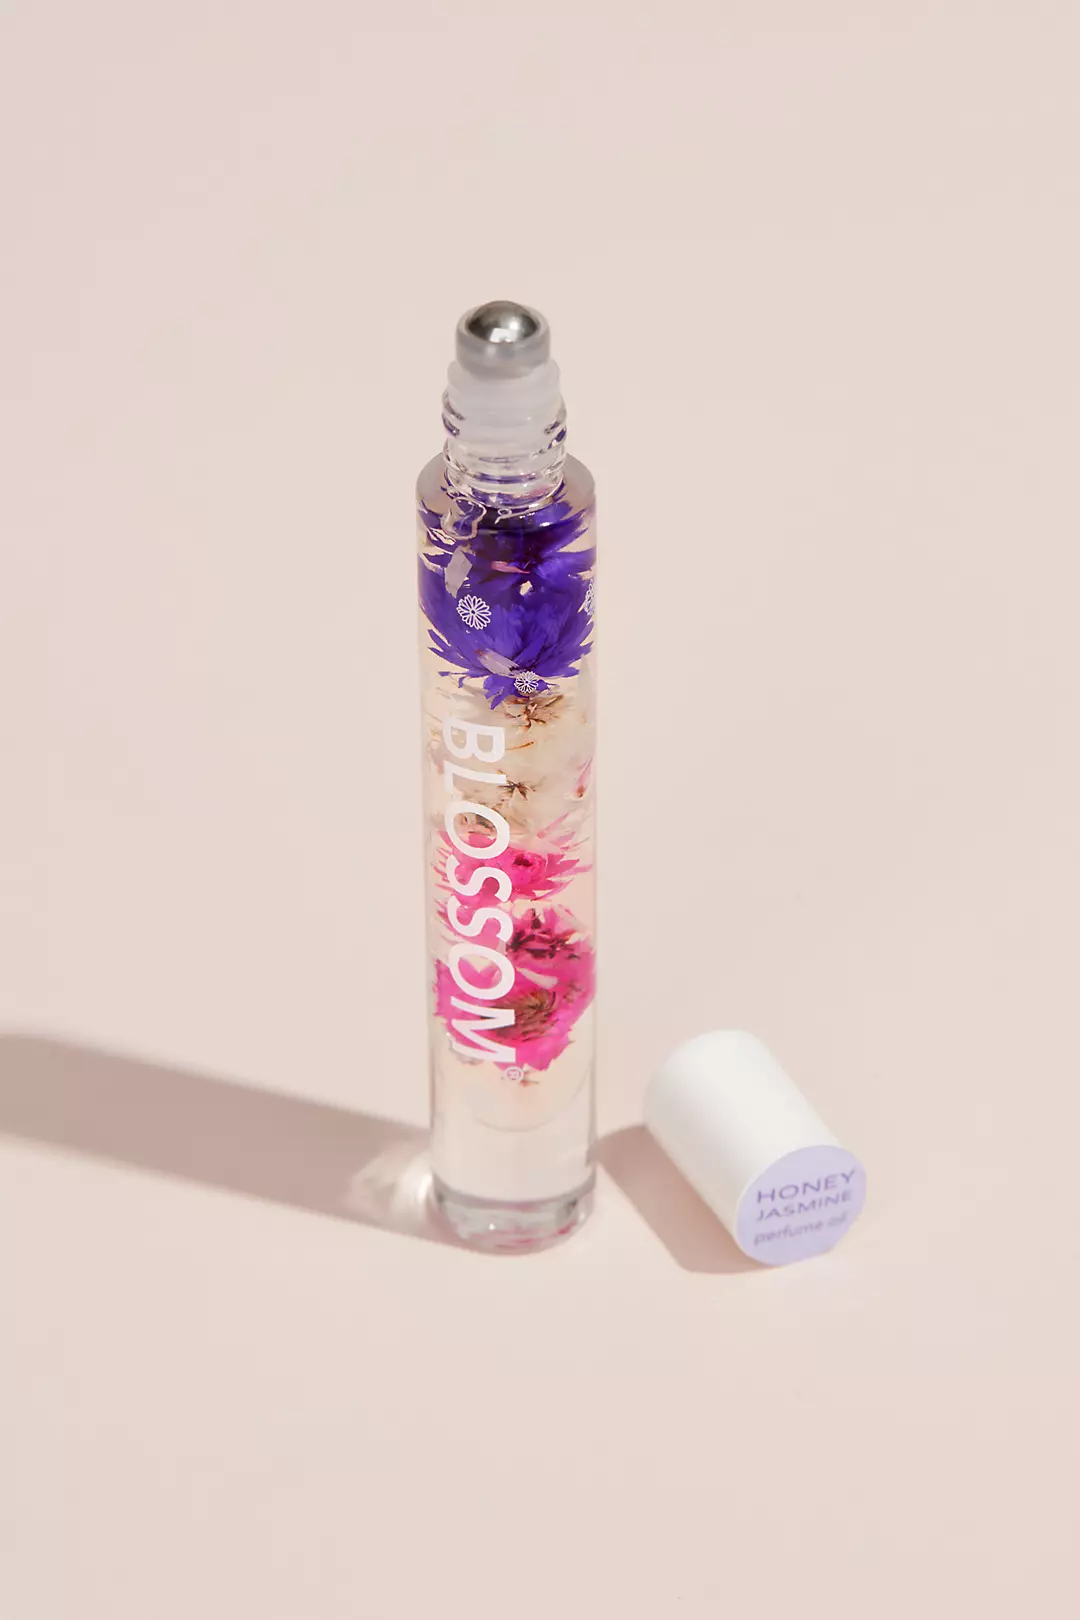 Honey Jasmine Flower Infused Roll-On Perfume Image 2